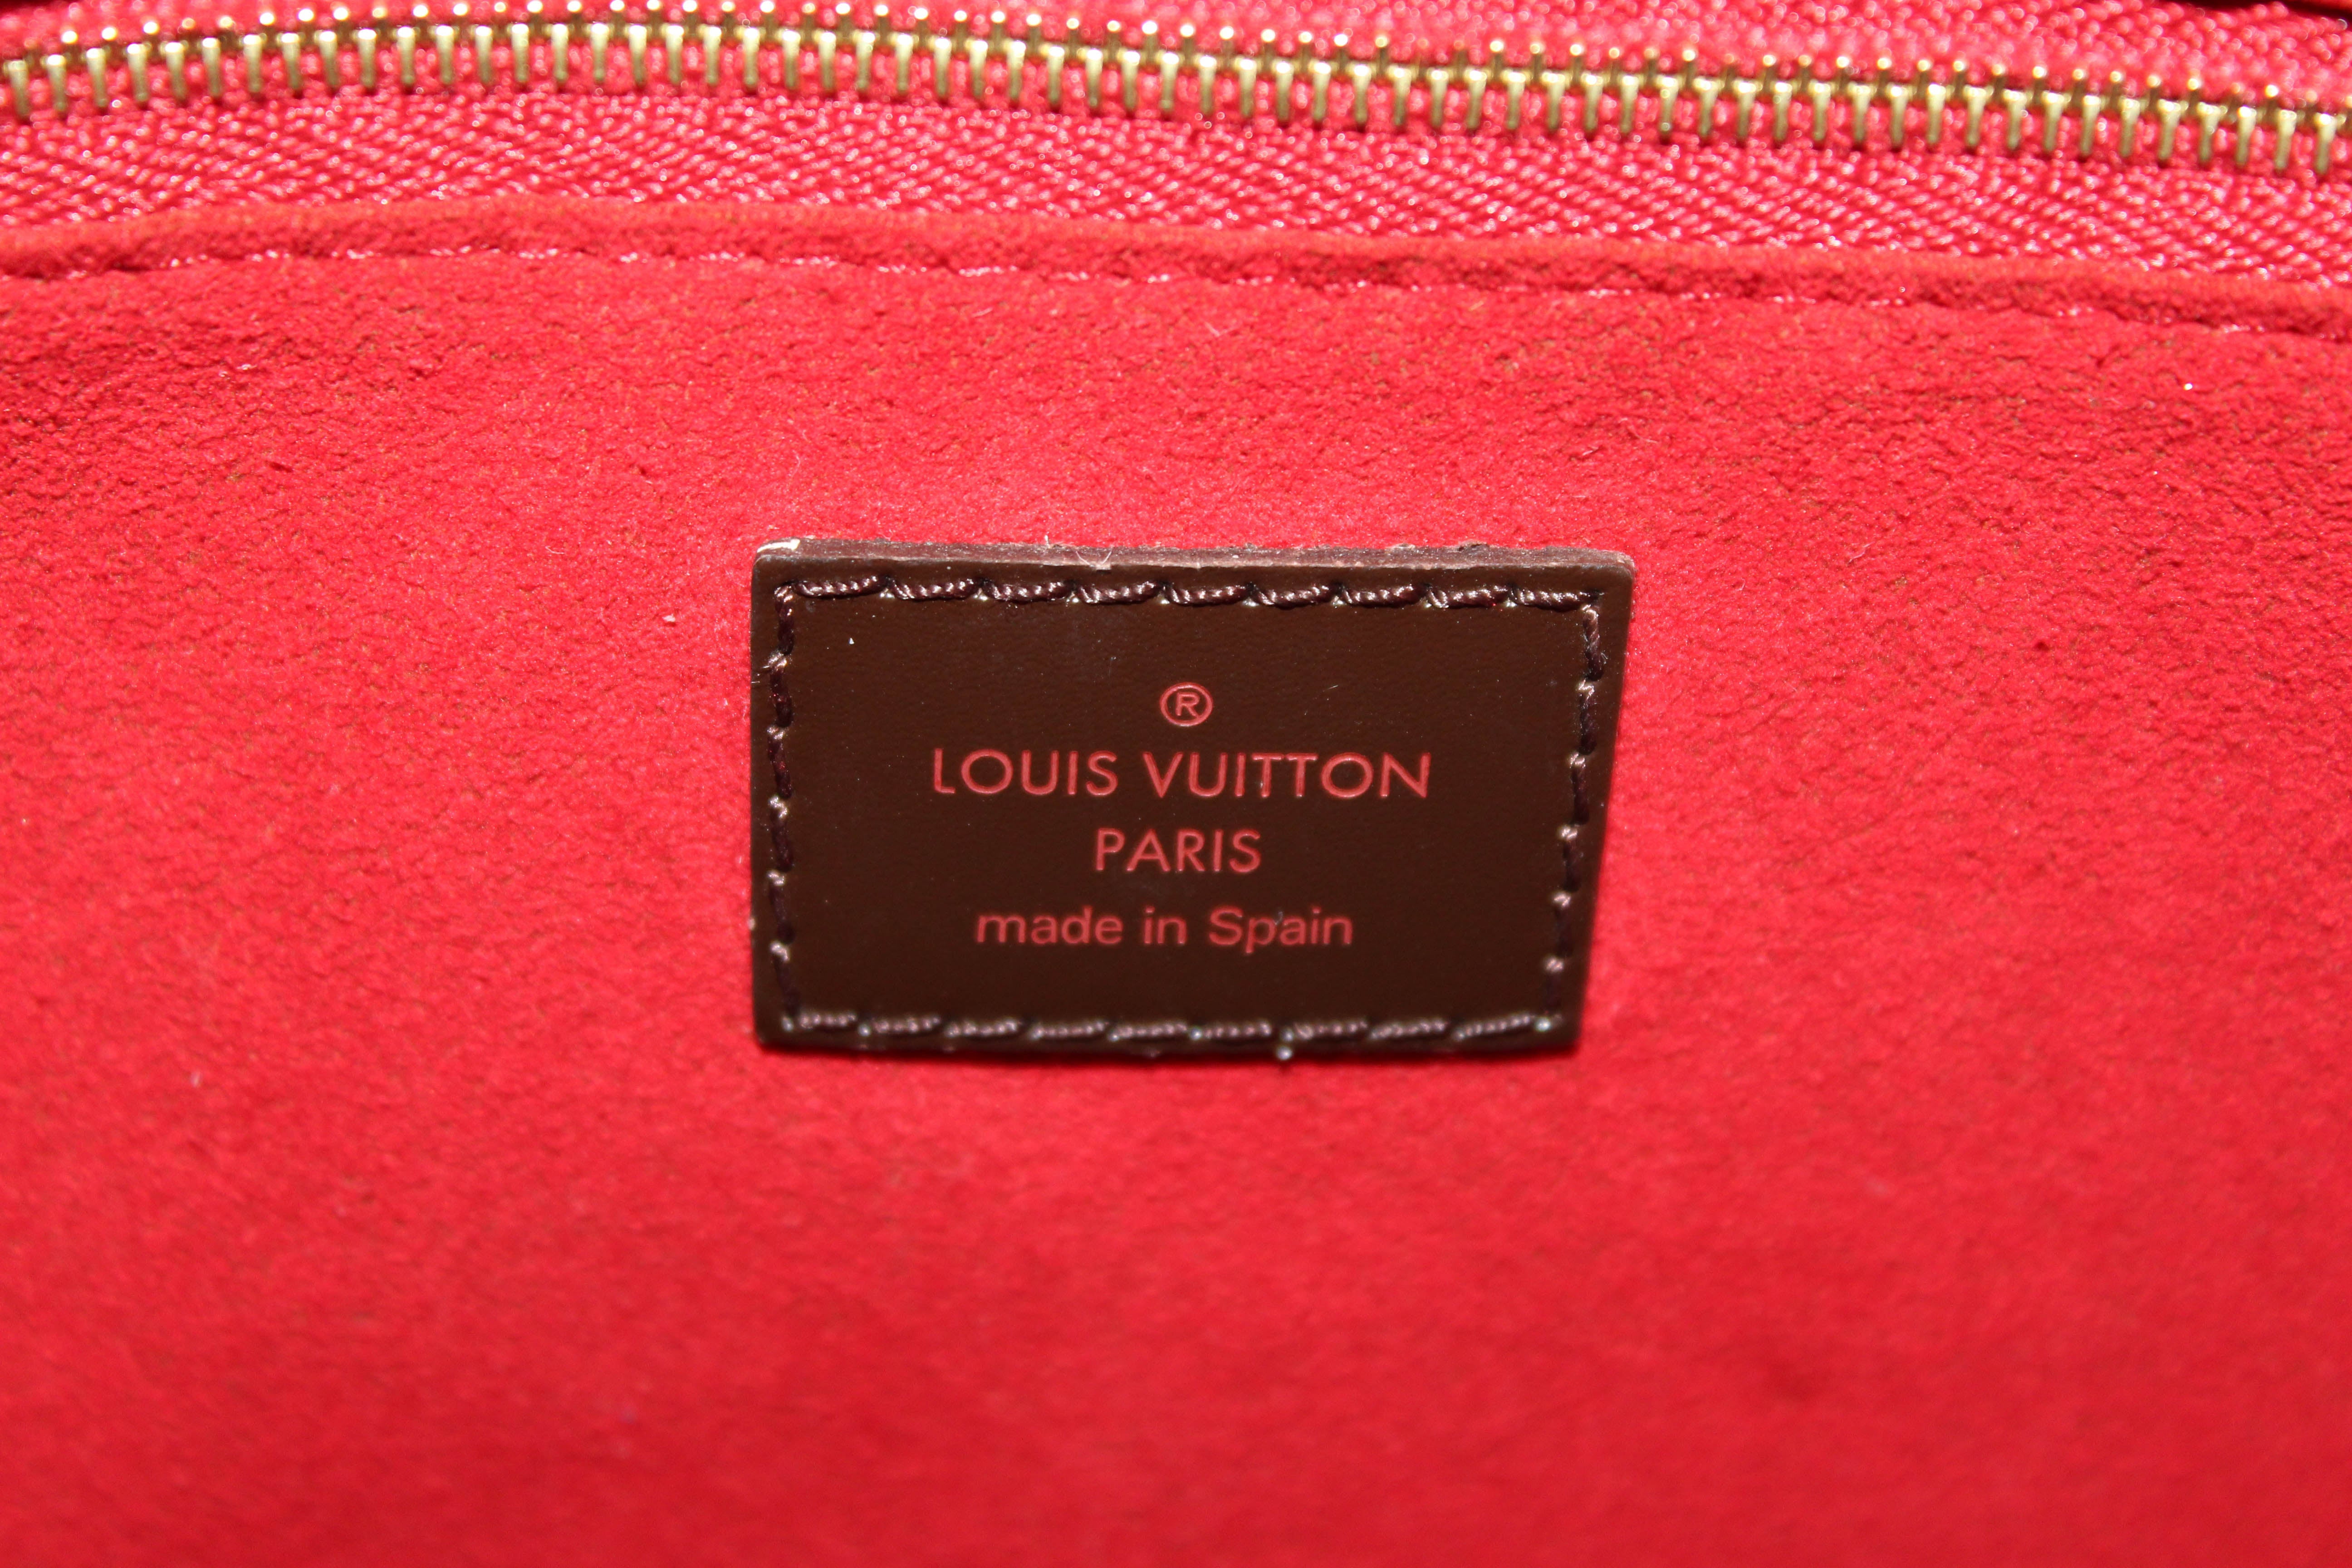 Authentic Louis Vuitton Damier Ebene Reggia Shoulder Bag